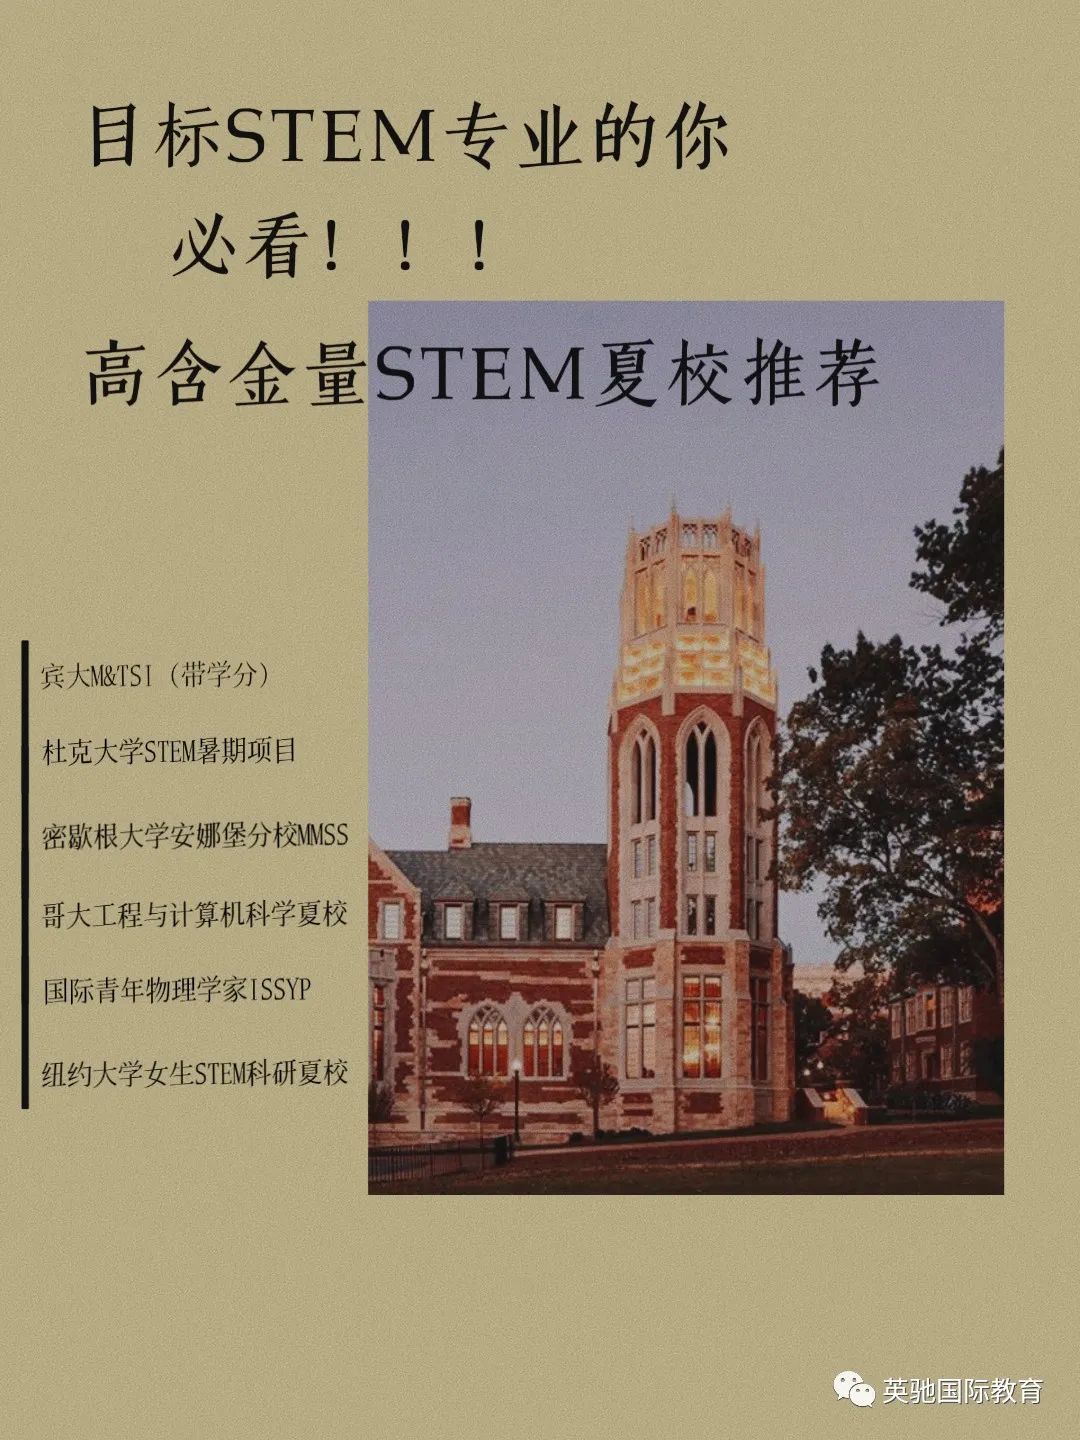 夏校|中国学生都在咨询的高含金量STEM夏校，申请截止日期邻近，快来捡漏！！！